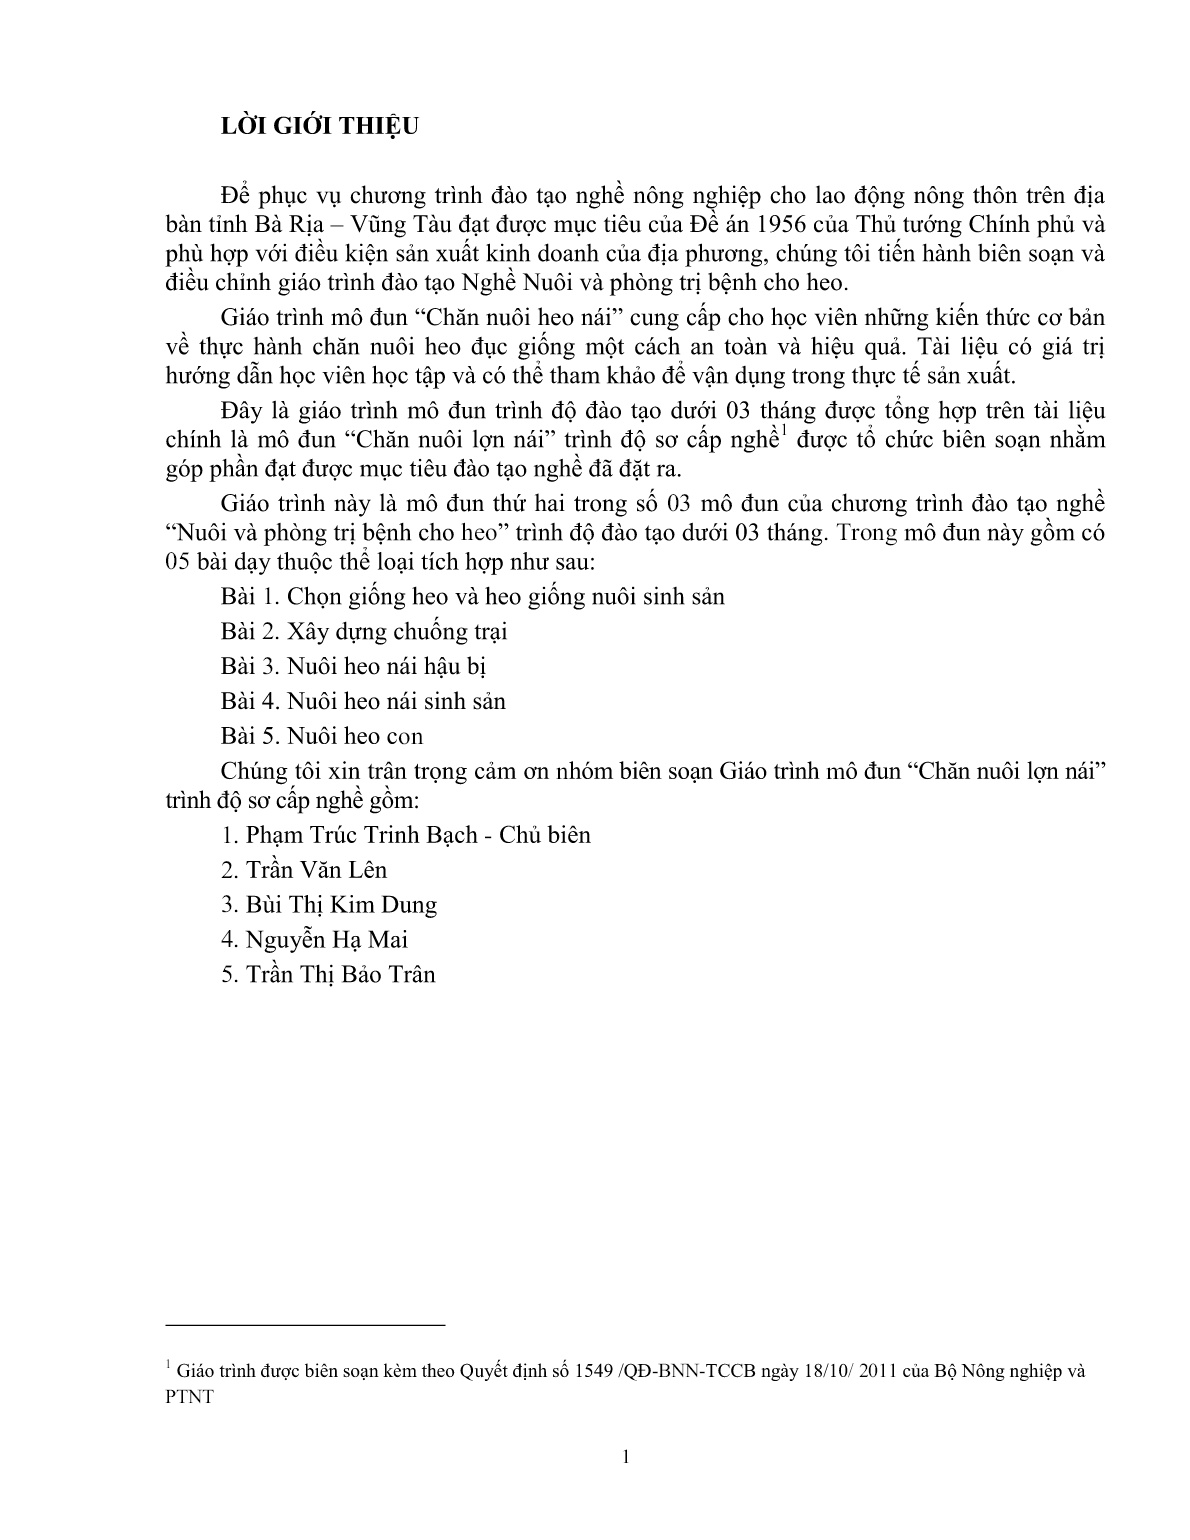 Giáo trình mô đun Chăn nuôi heo nái (Trình độ: Đào tạo dưới 3 tháng) trang 2